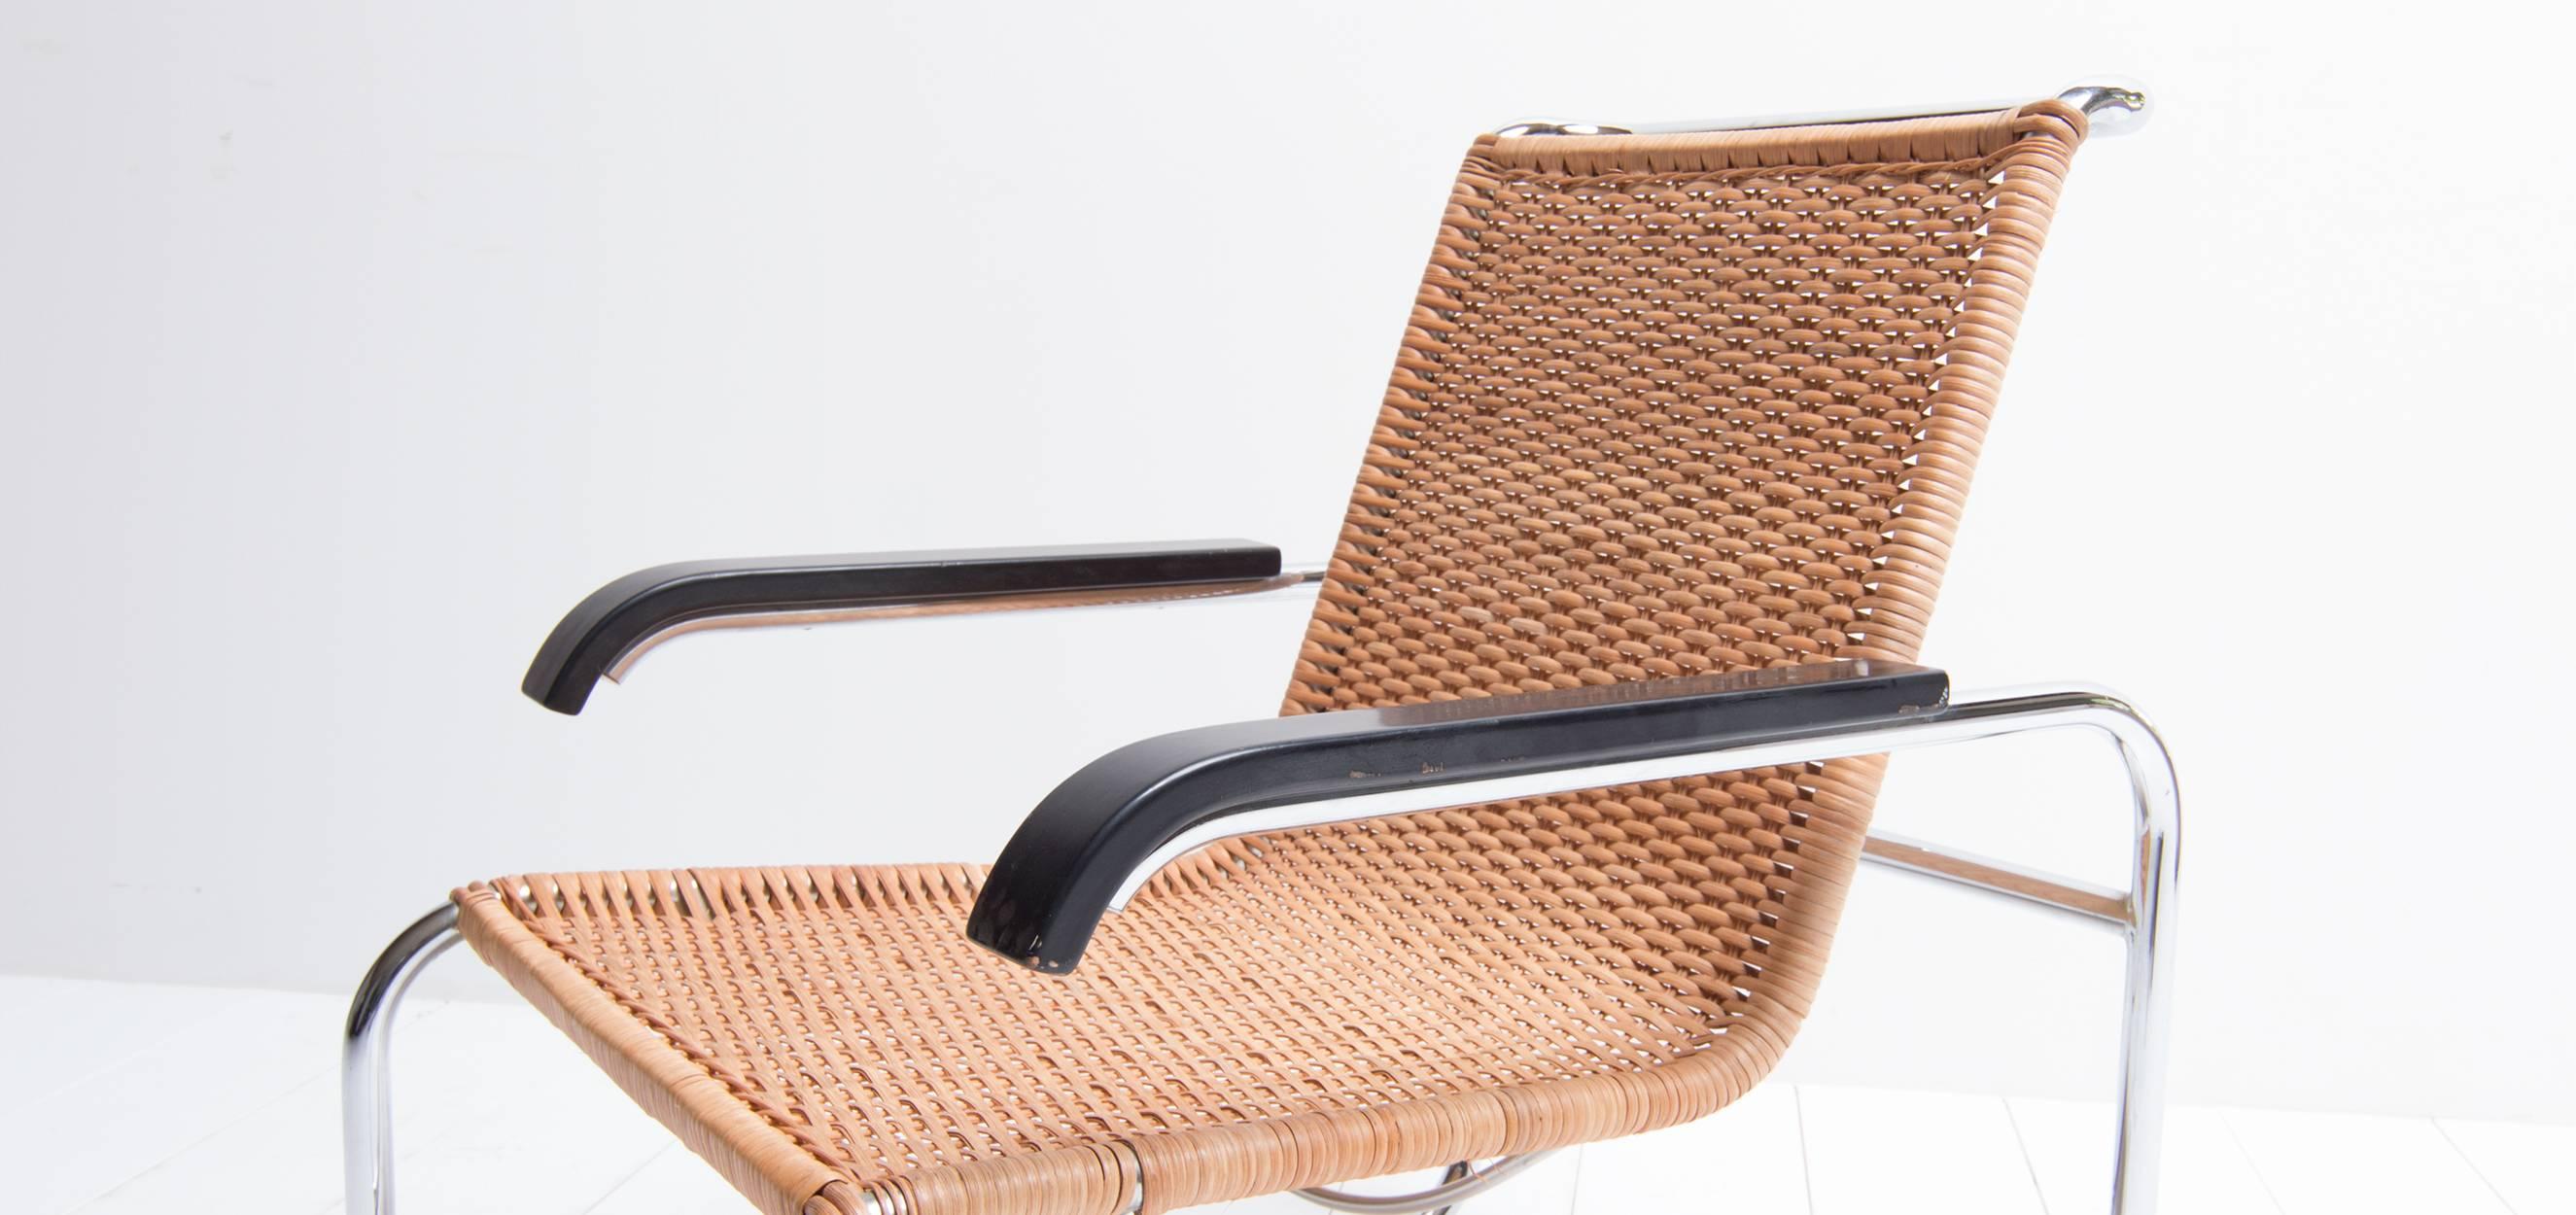 German Vintage Design Cantilever Chair Model B35, Designed by Marcel Breuer